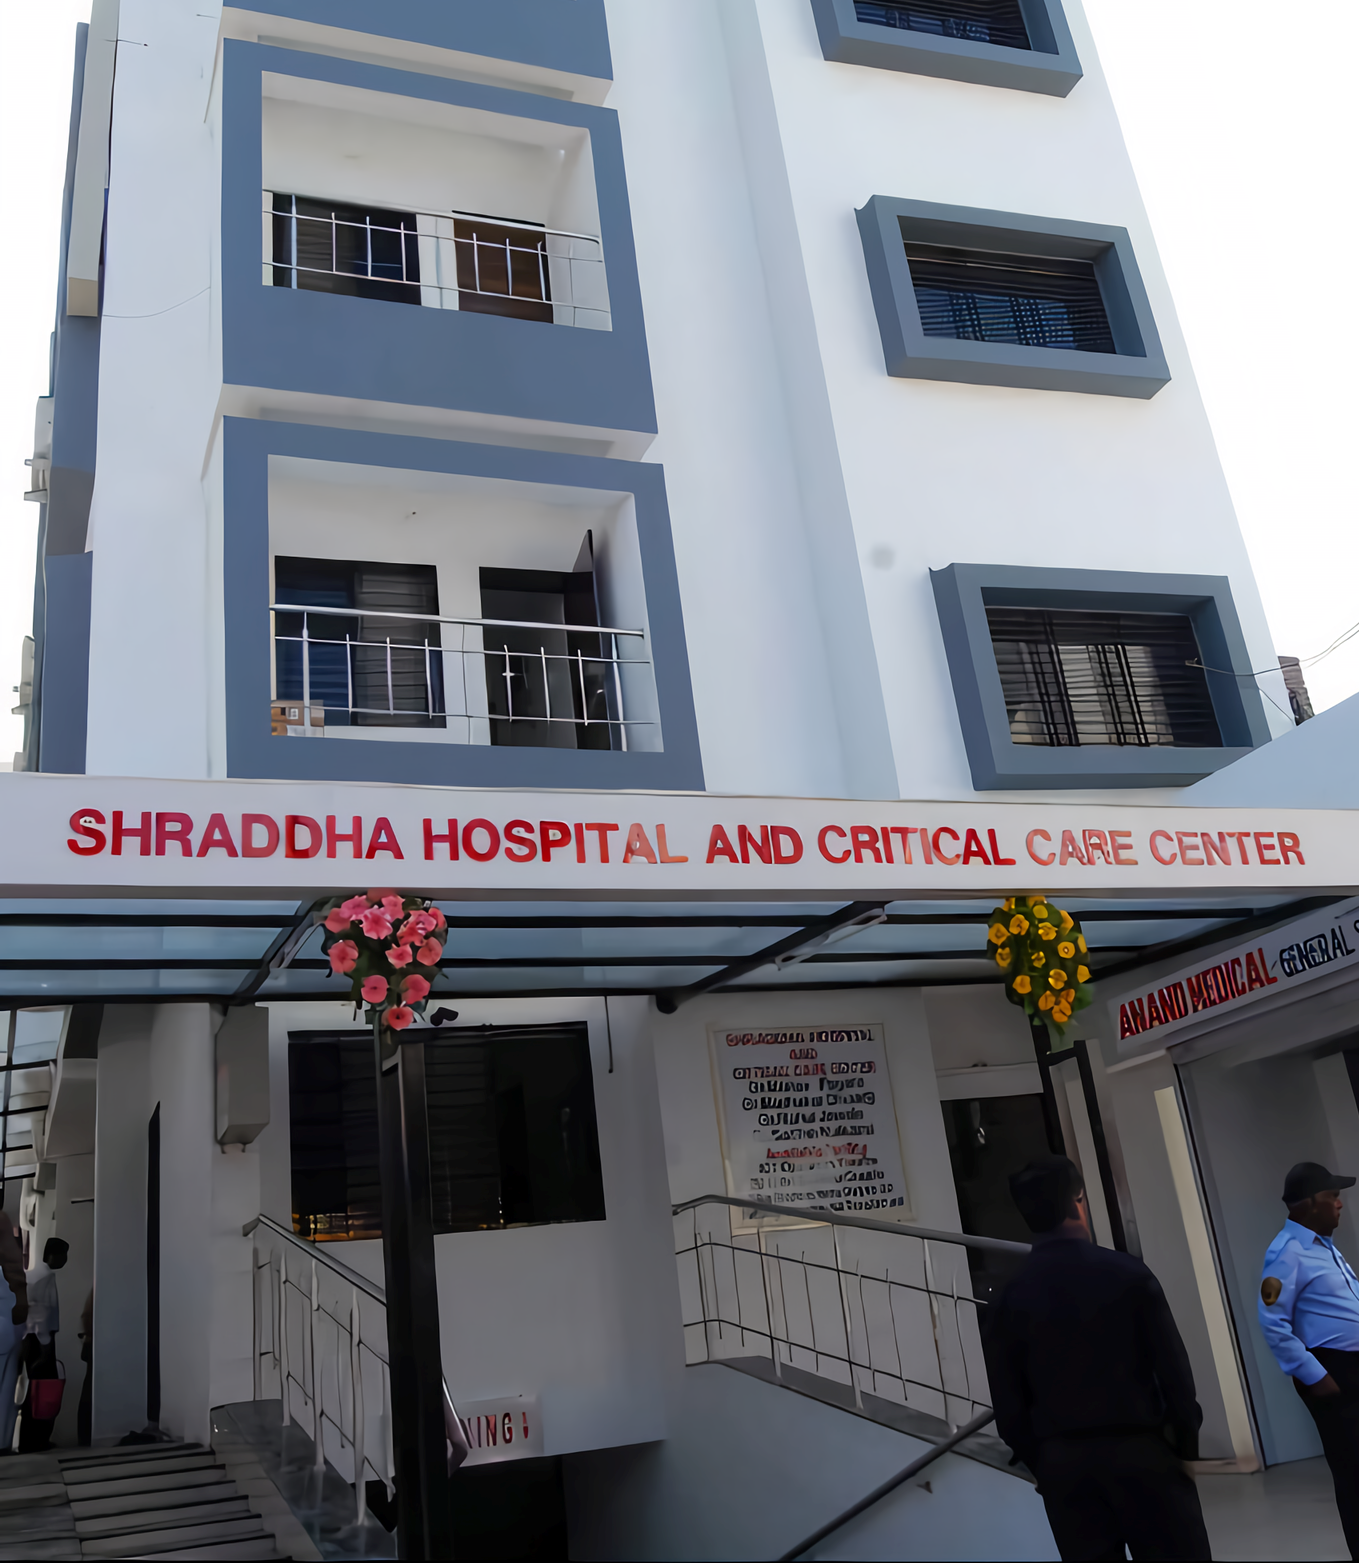 Shraddha Hospital And Critical Care Center